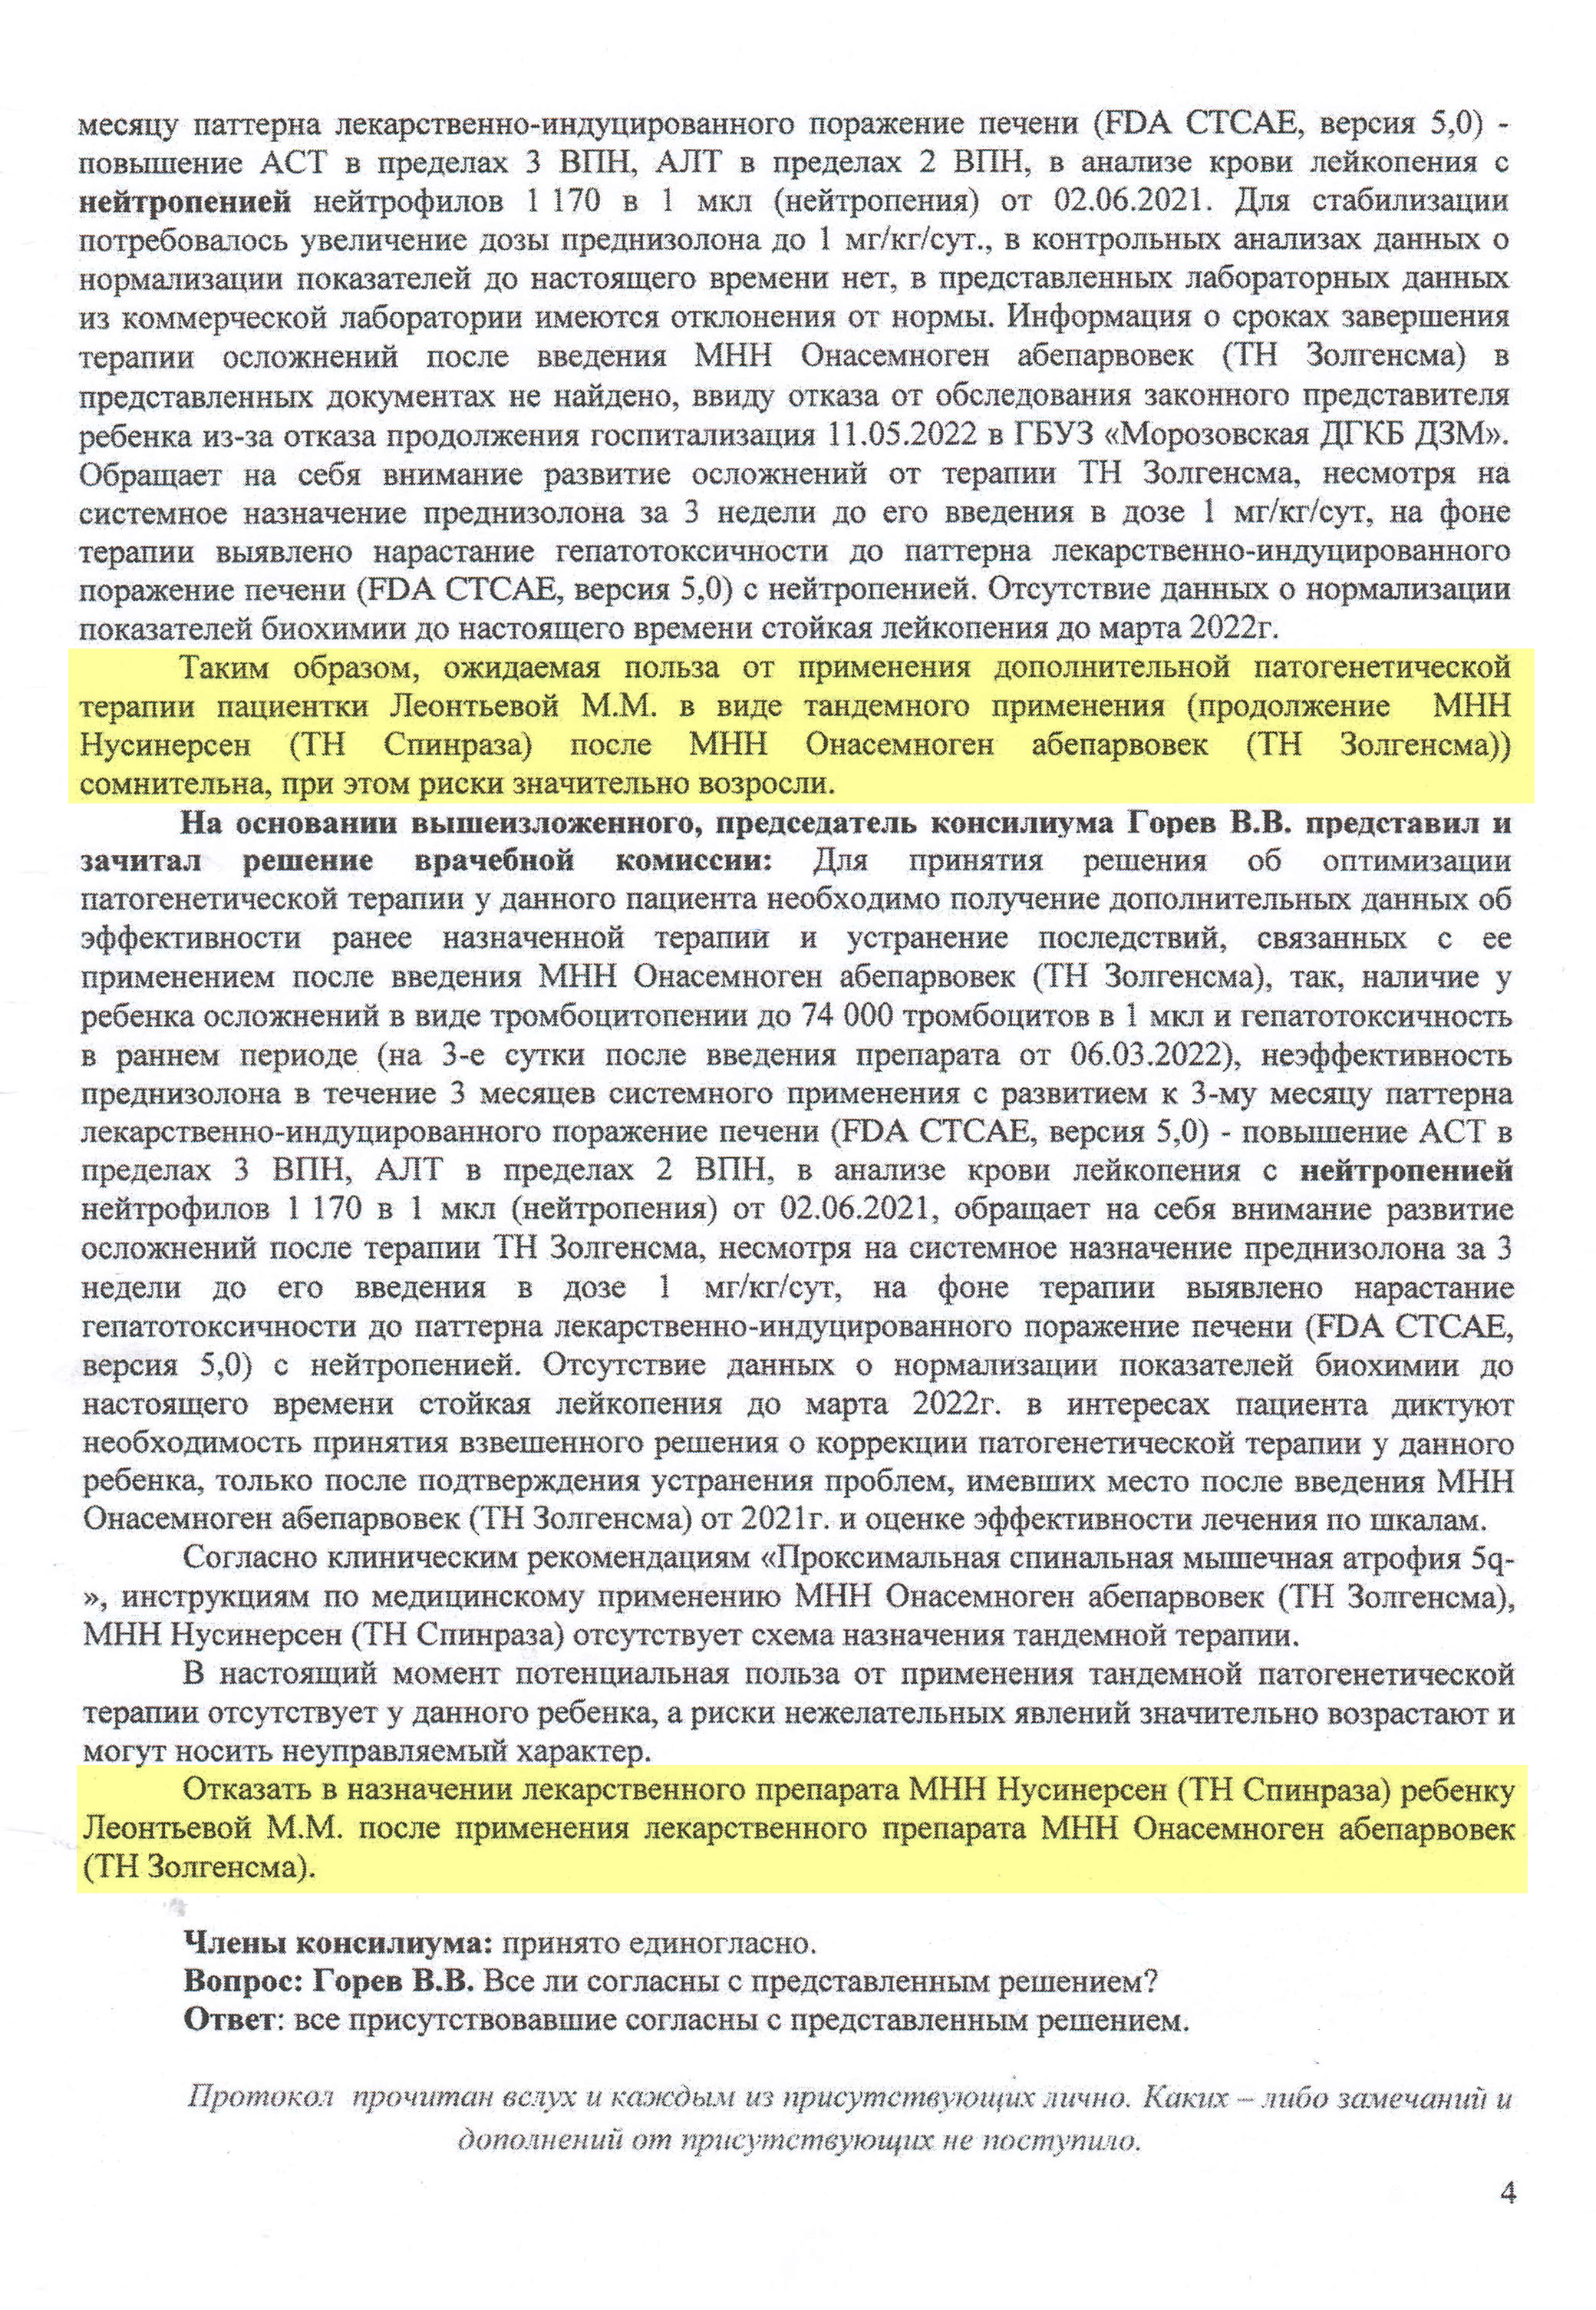 11 мая 2022 года Морозовская больница провела врачебную комиссию. Она решила отказать Маше в лечении